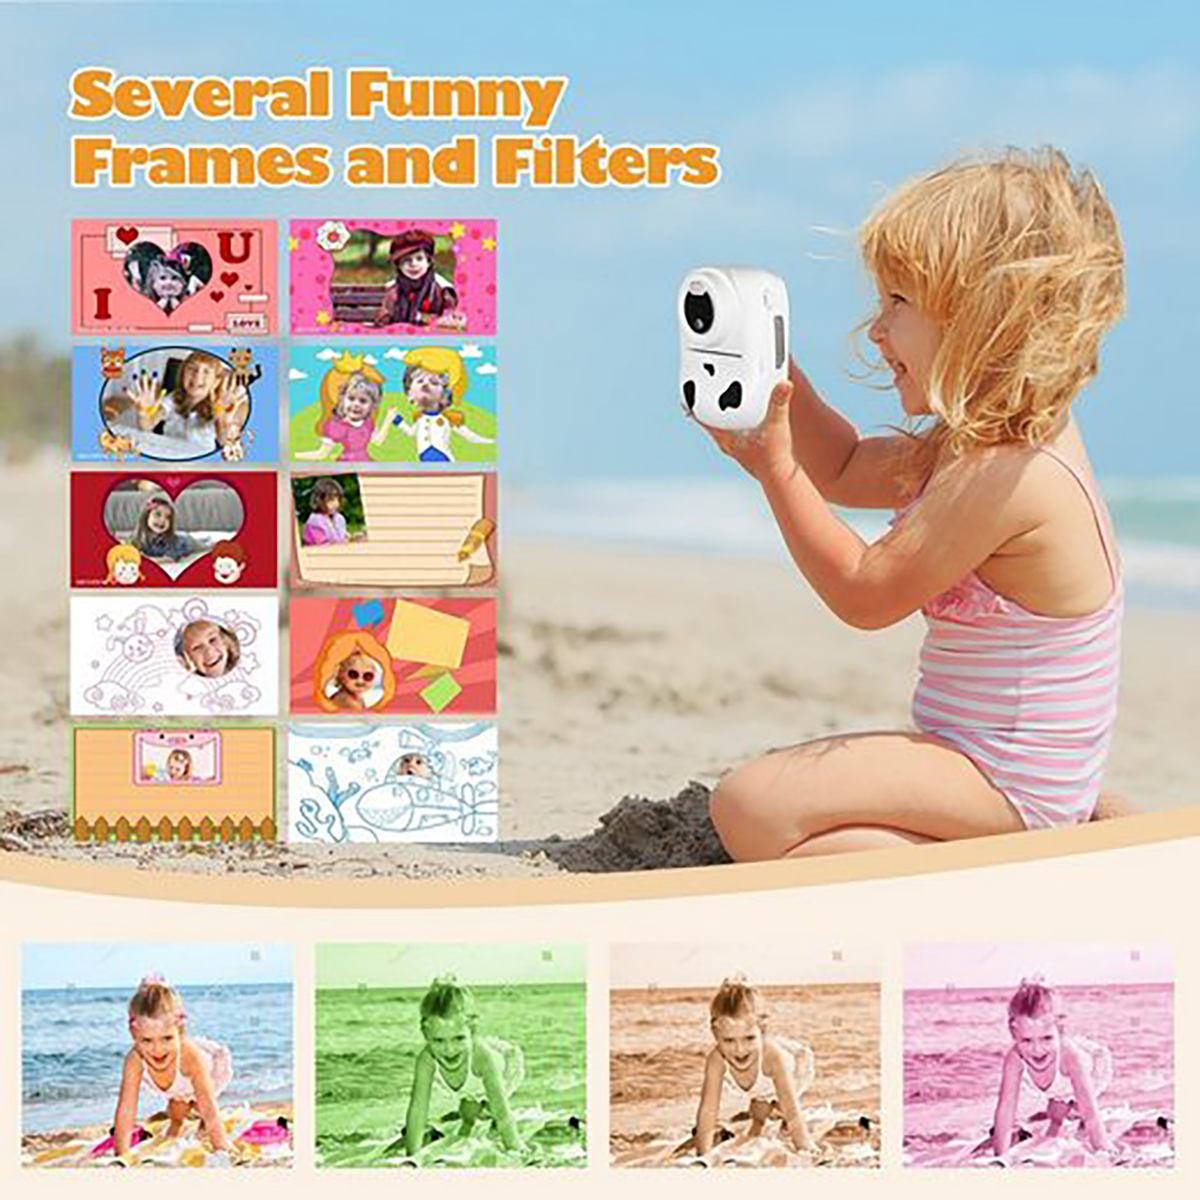 FINE LIFE PRO Kinderkamera-Sofortdruckfunktion Dual-Kameras Farbstiften Kinderkamera, kostenlosen und Aufklebern Schwarz-weißes